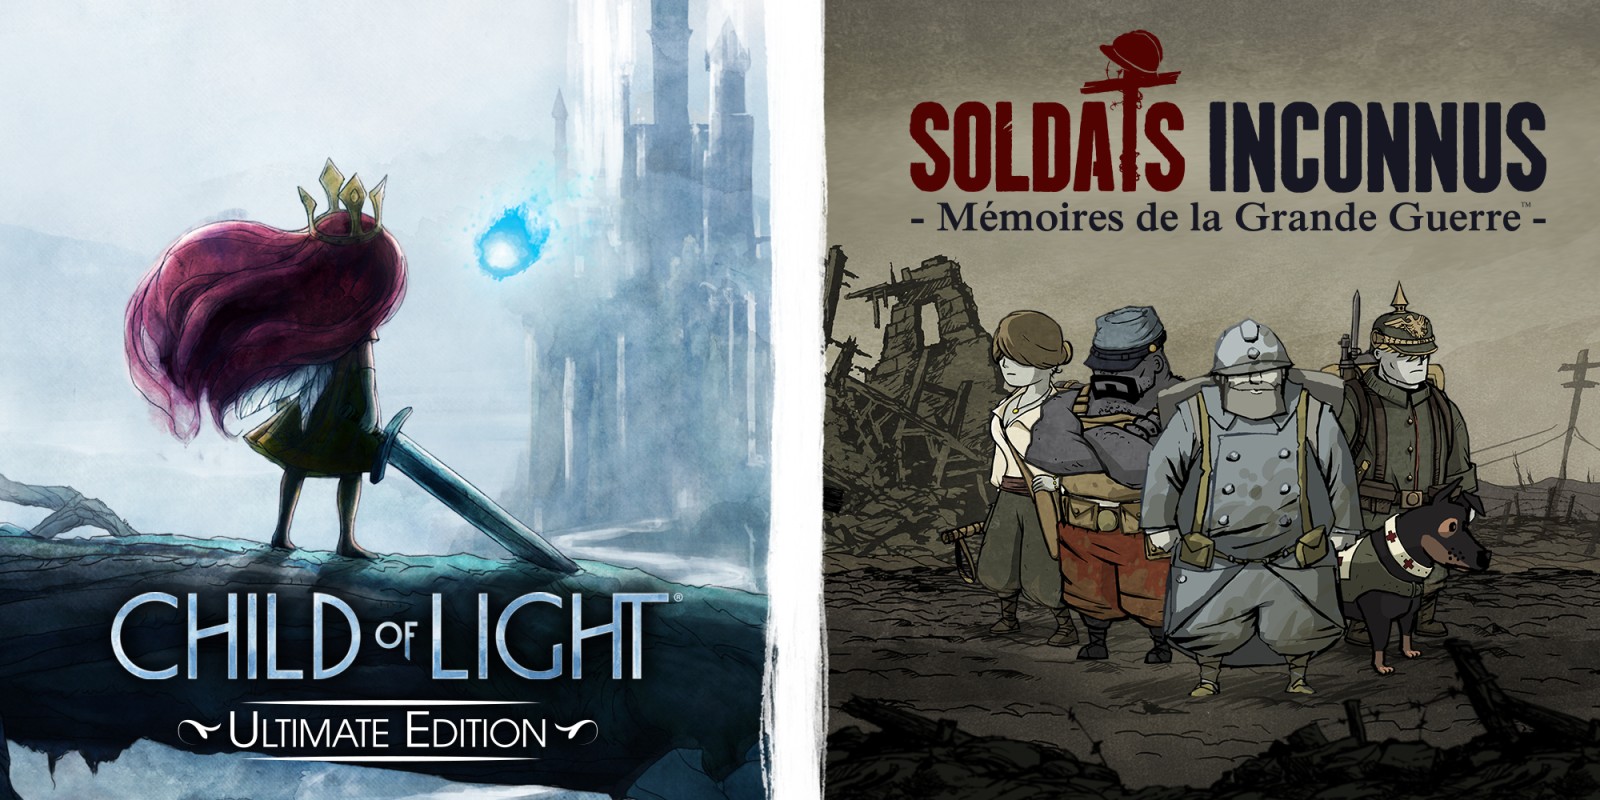 Child of Light Ultimate Edition & Soldats Inconnus - Mémoires de la Grande Guerre  Bundle